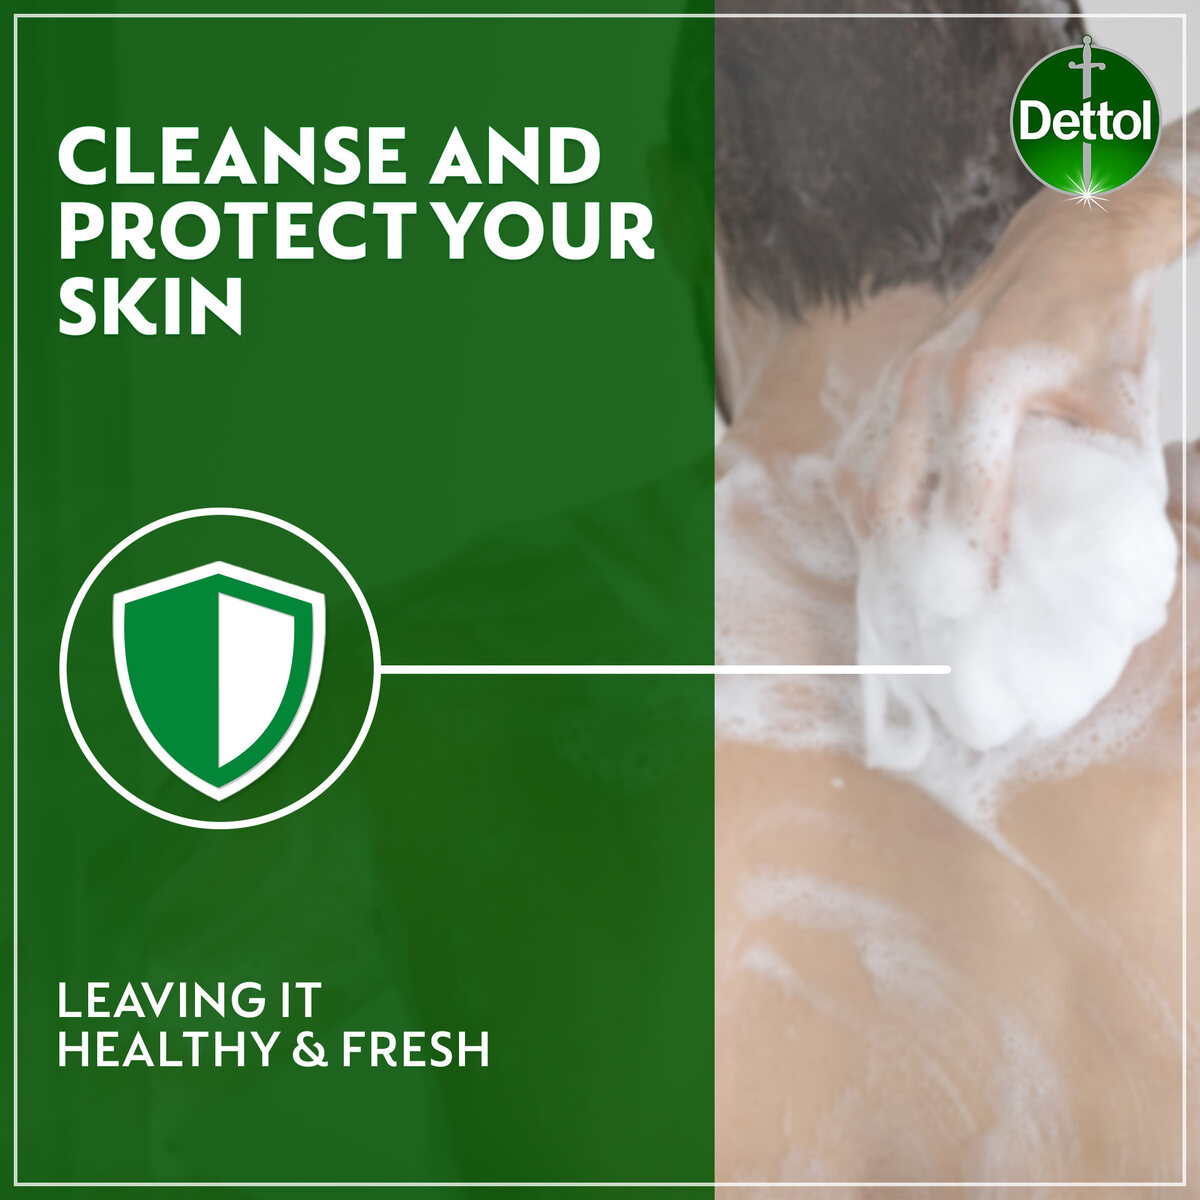 Dettol Fresh Anti-Bacterial Bathing Soap Bar Citrus & Orange Blossom Fragrance 165 g